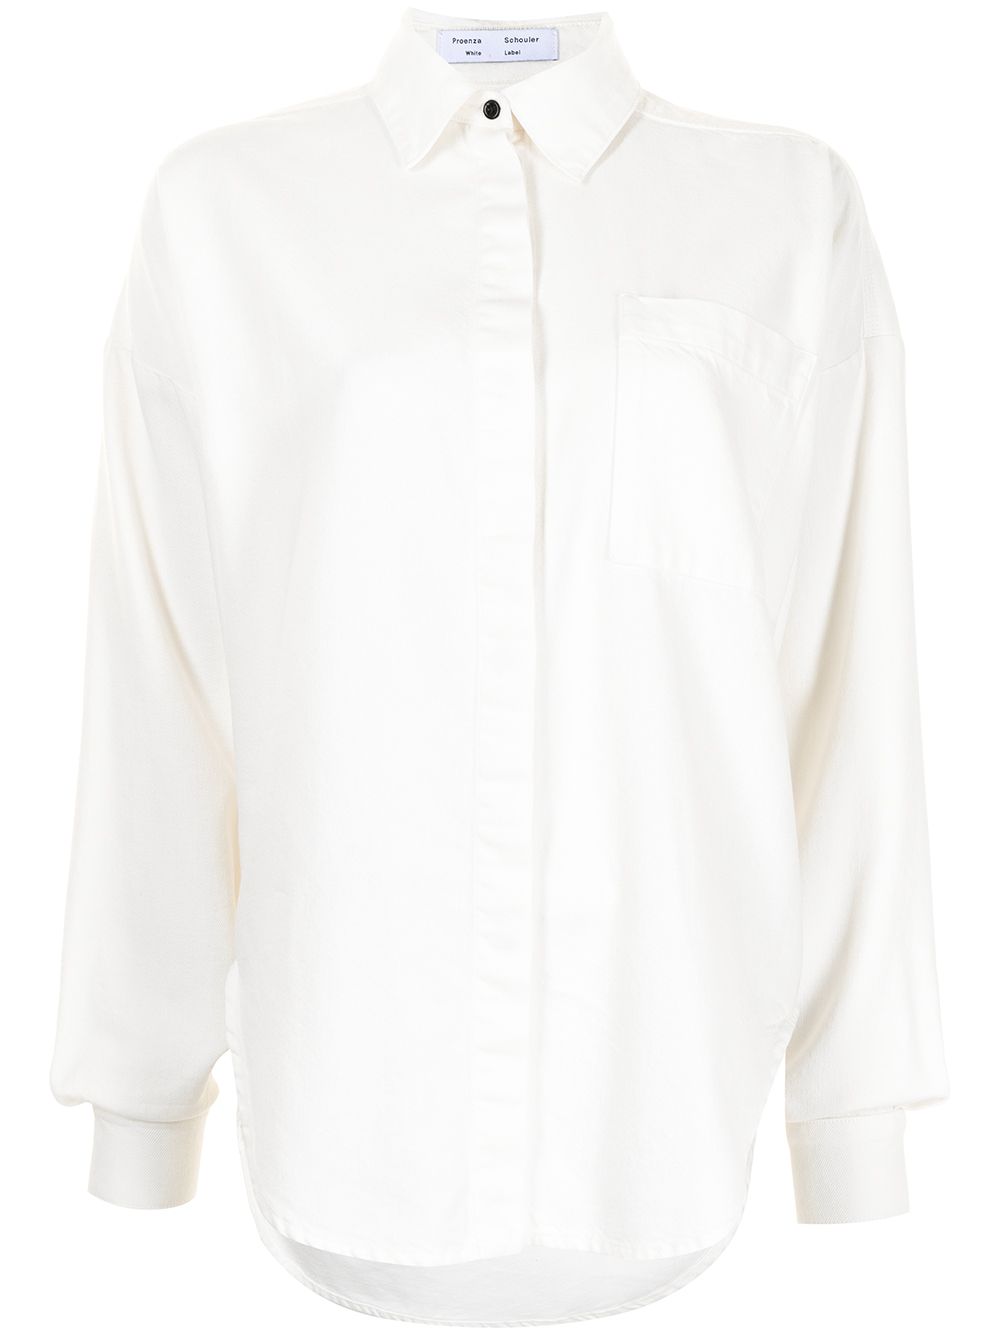 фото Proenza schouler white label рубашка на пуговицах